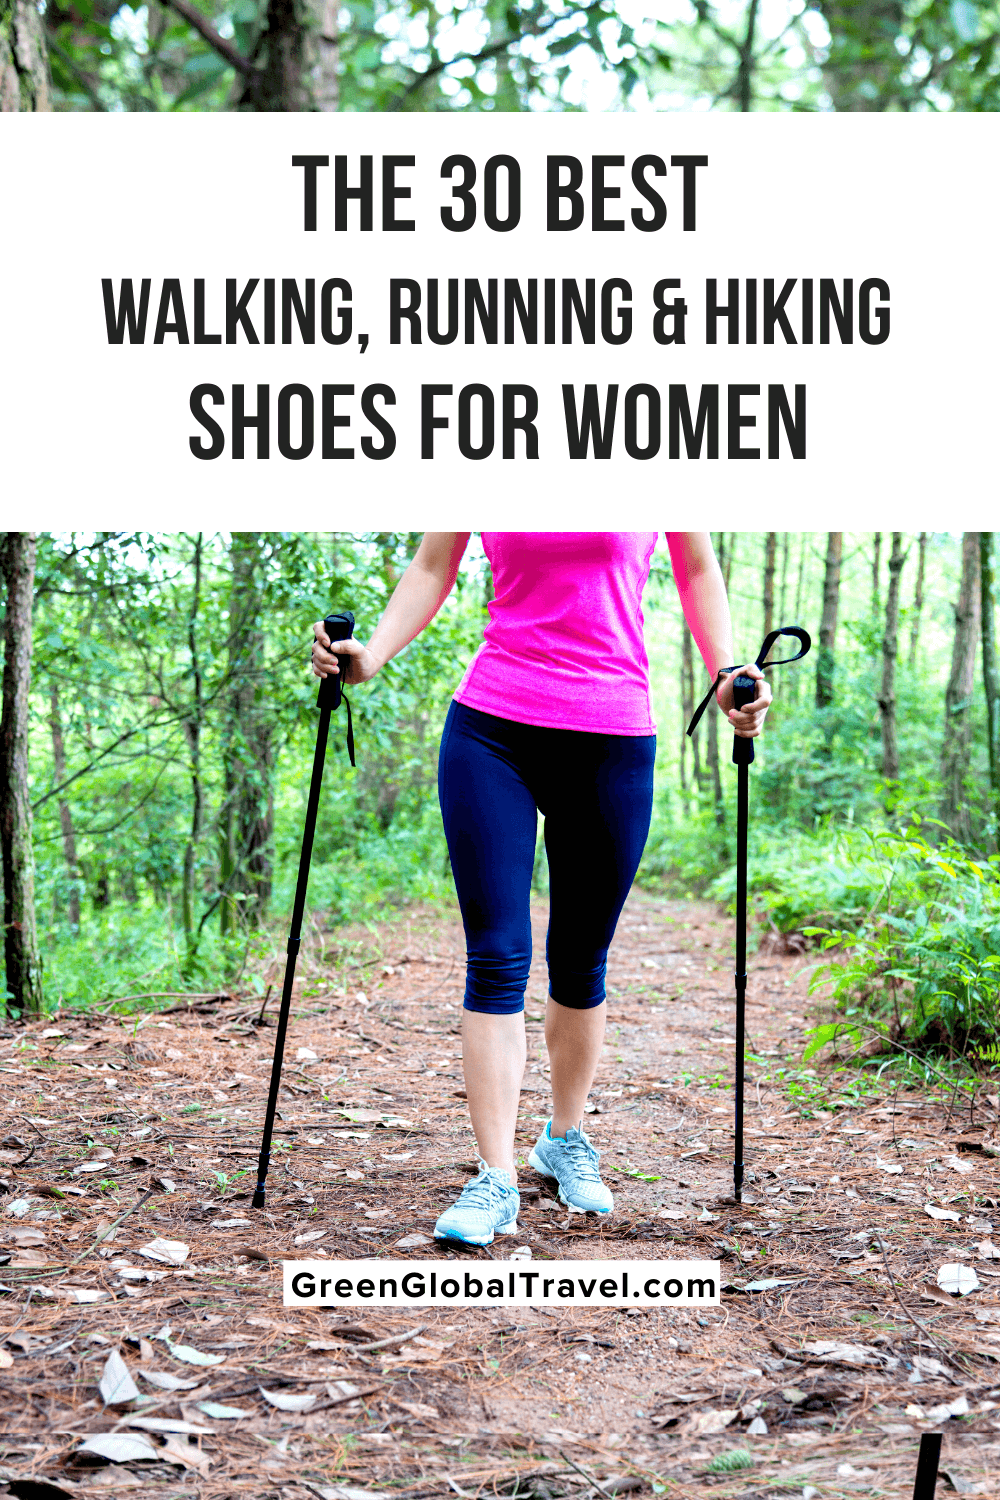 ZHENZHONG Womens Trail Hiking Shoes Trekking Mountain Walking Sports Shoes